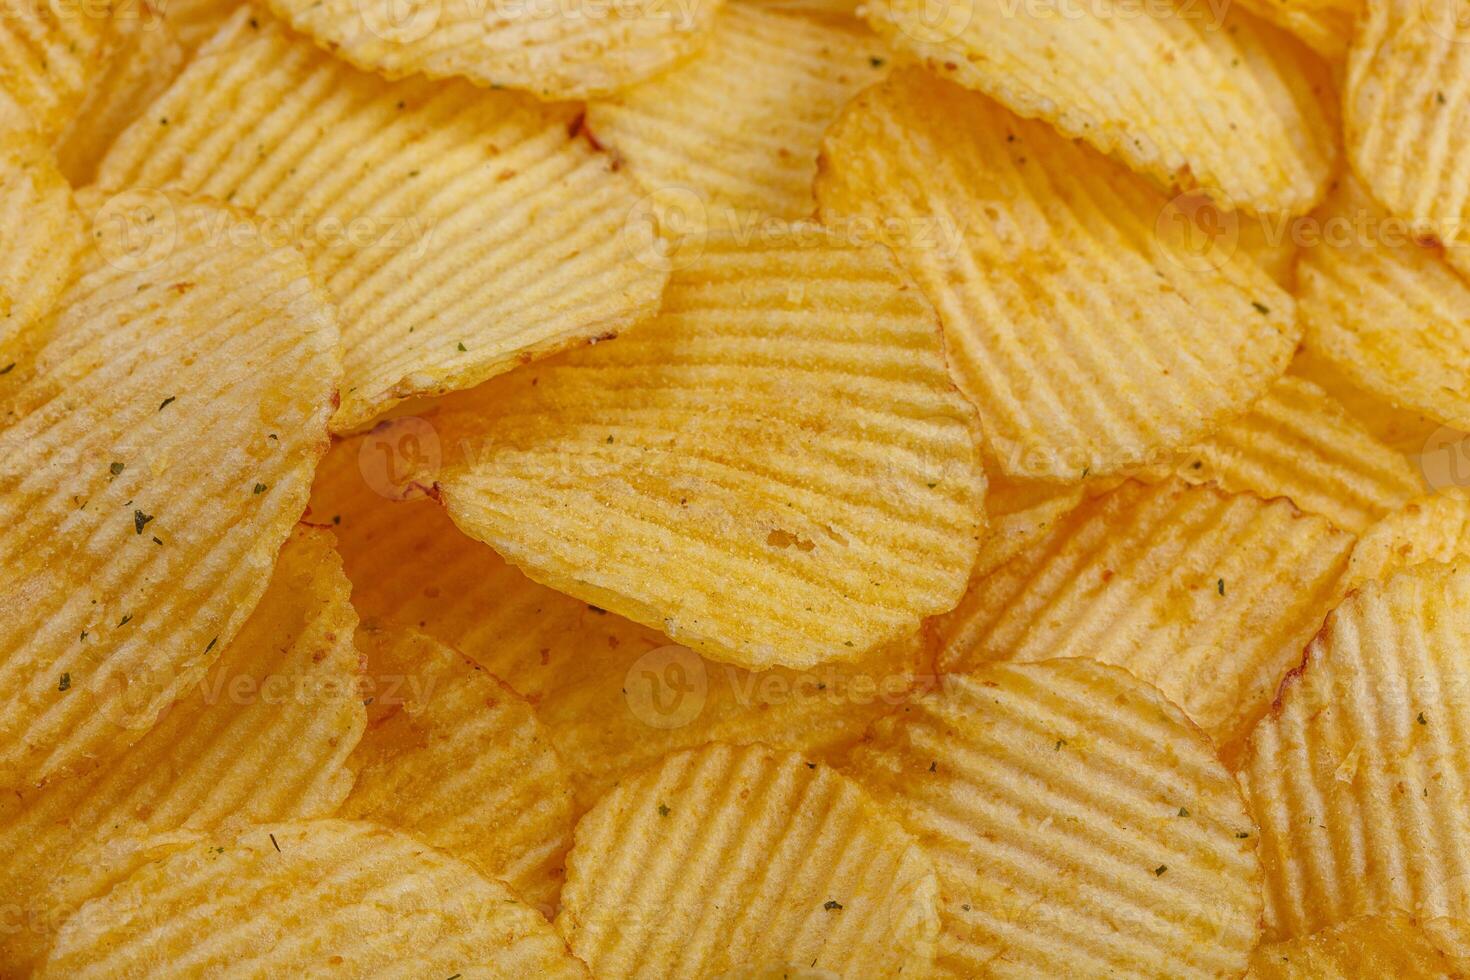 veel van aardappel chips, structuur foto